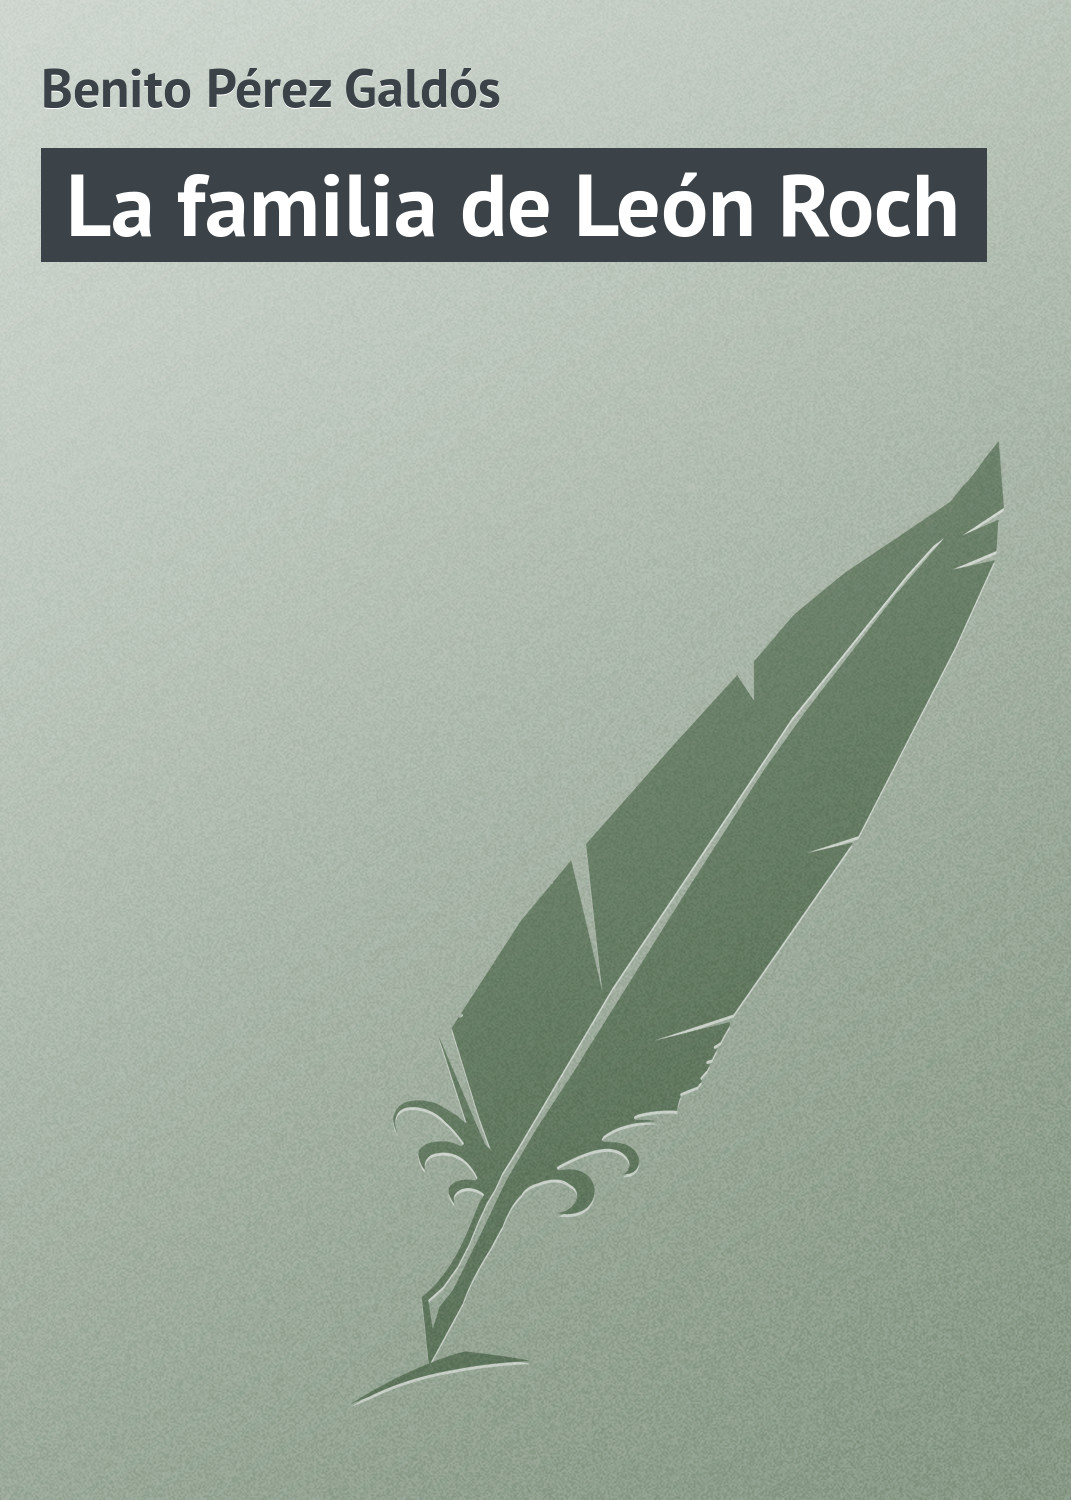 Книга La familia de León Roch из серии , созданная Benito Pérez, может относится к жанру Зарубежная старинная литература, Зарубежная классика. Стоимость электронной книги La familia de León Roch с идентификатором 21107790 составляет 5.99 руб.